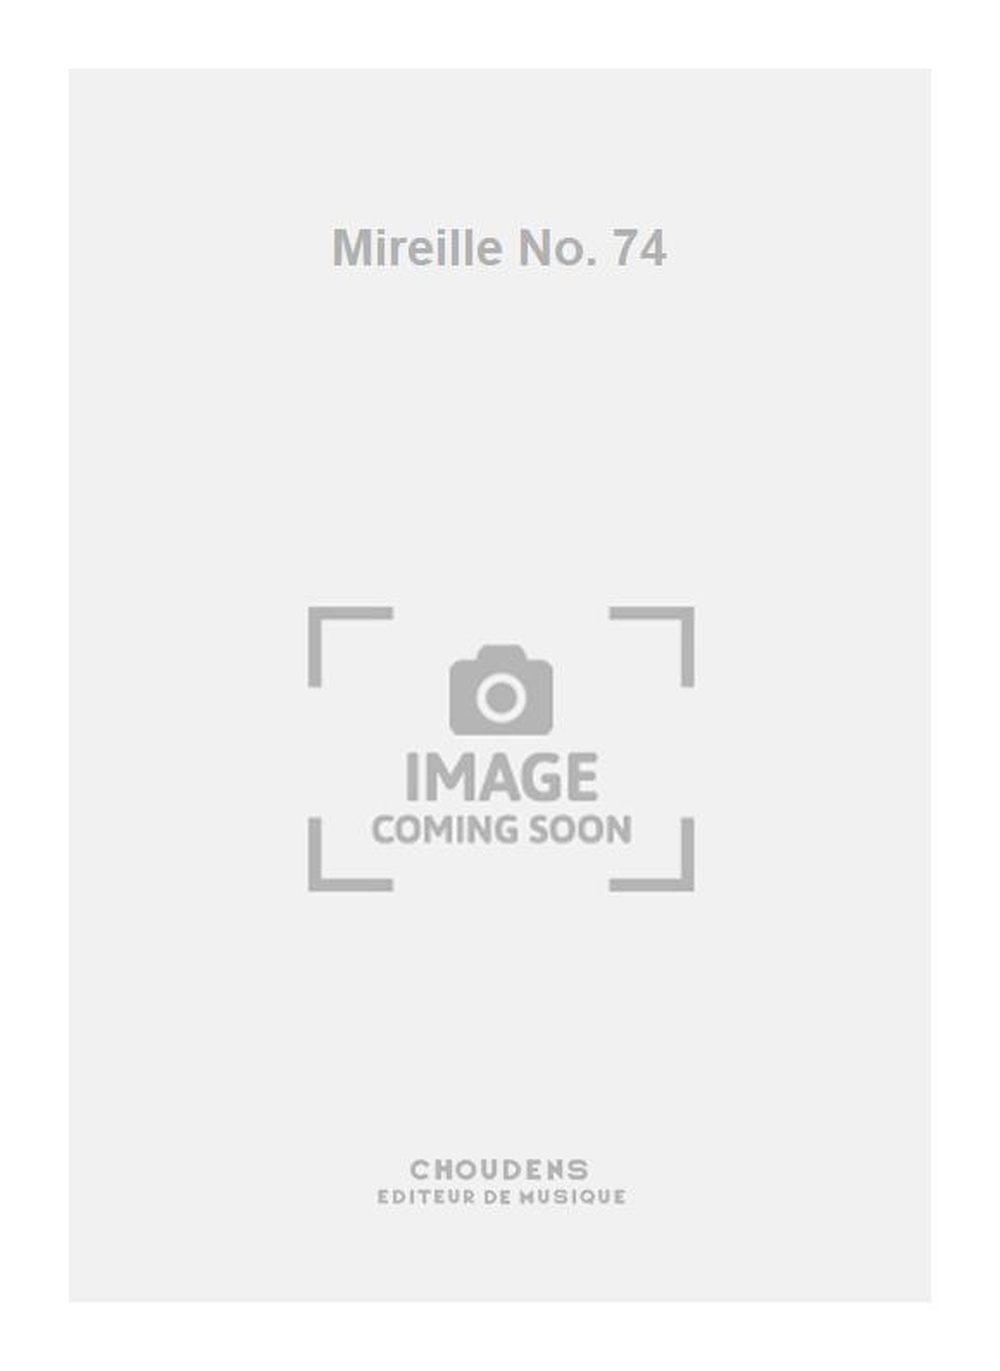 Mireille No. 74